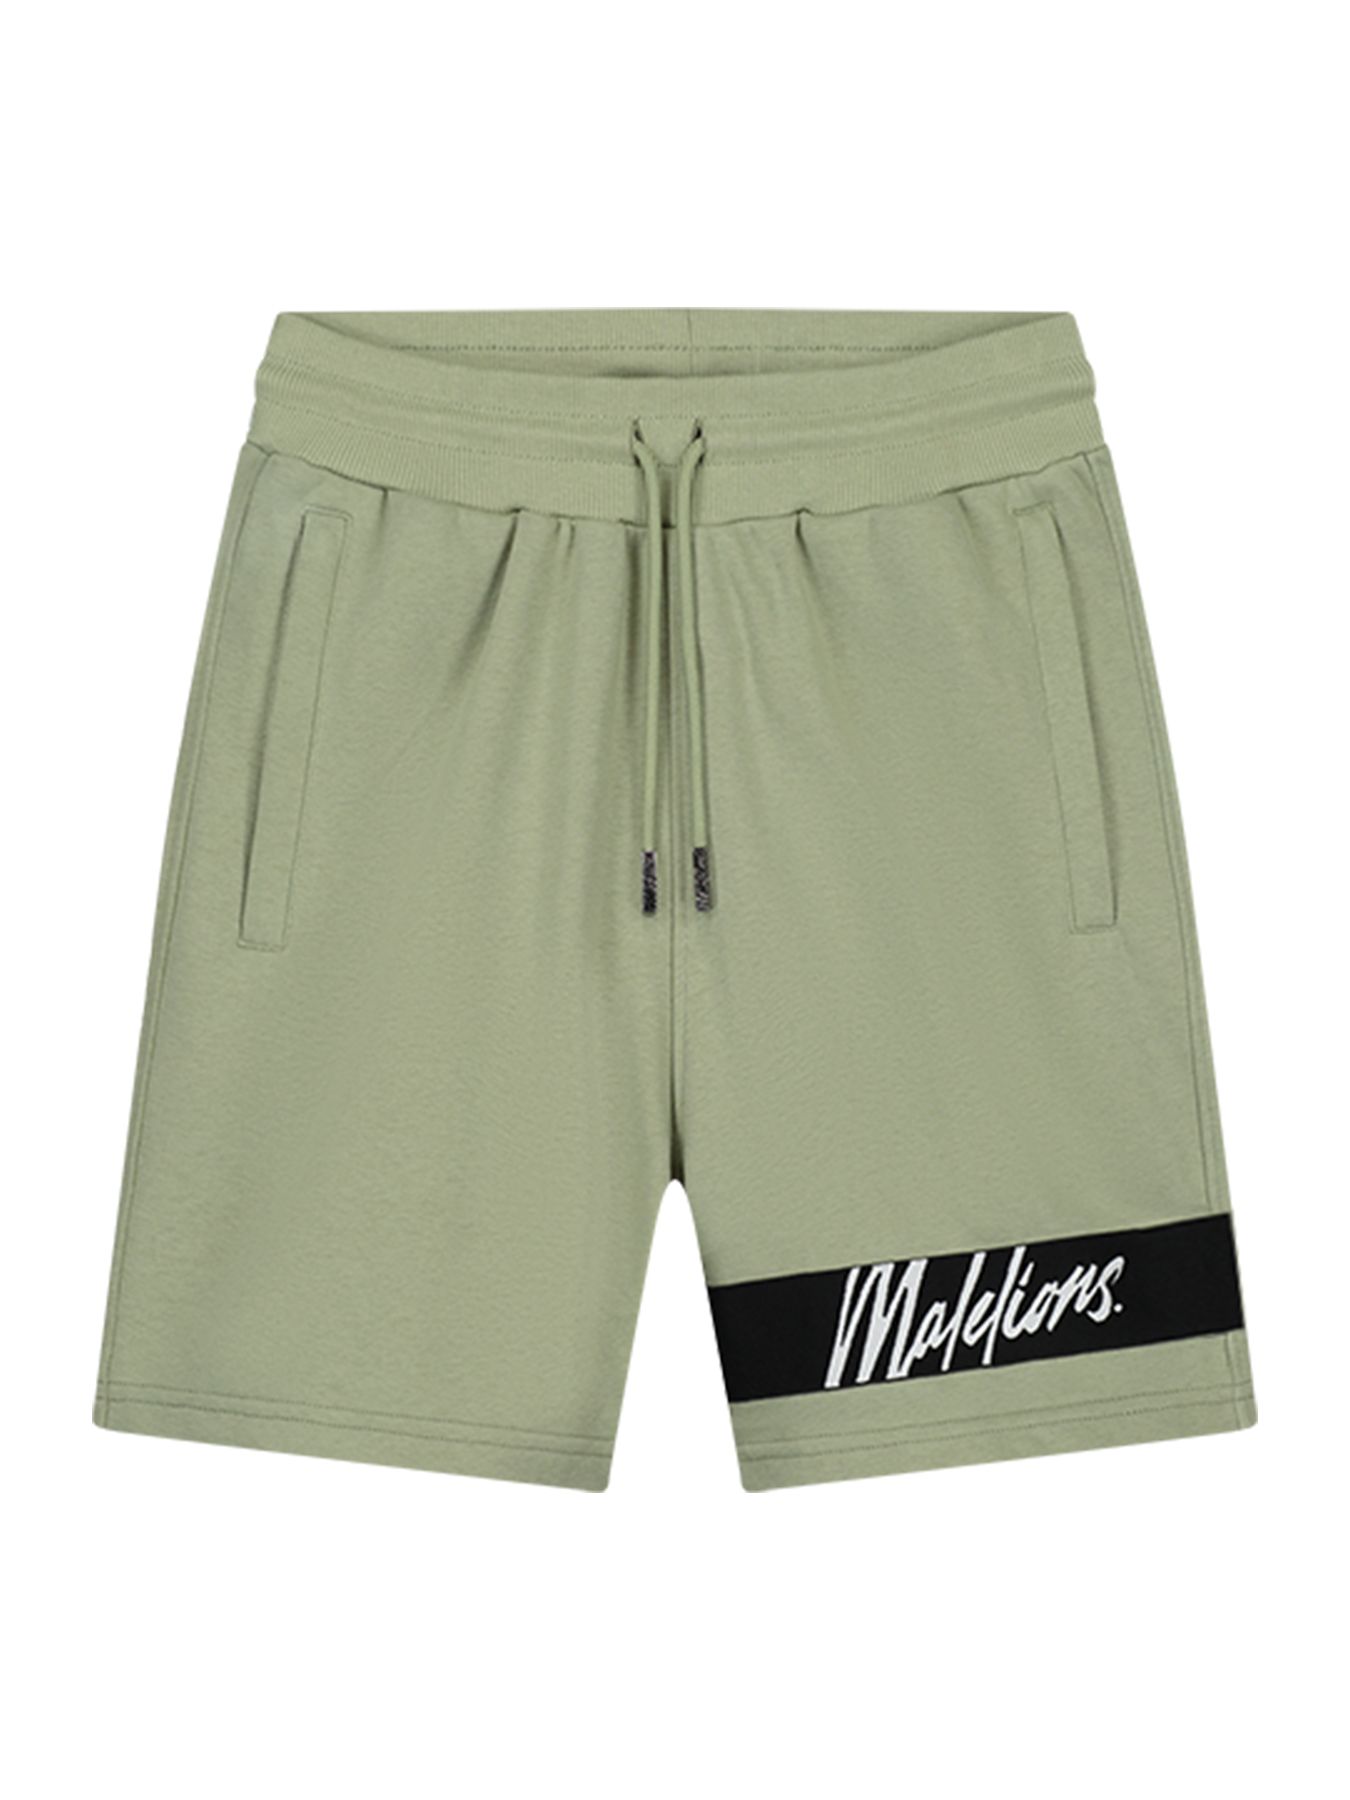 Malelions Men Captain shorts Sage 00108668-6377